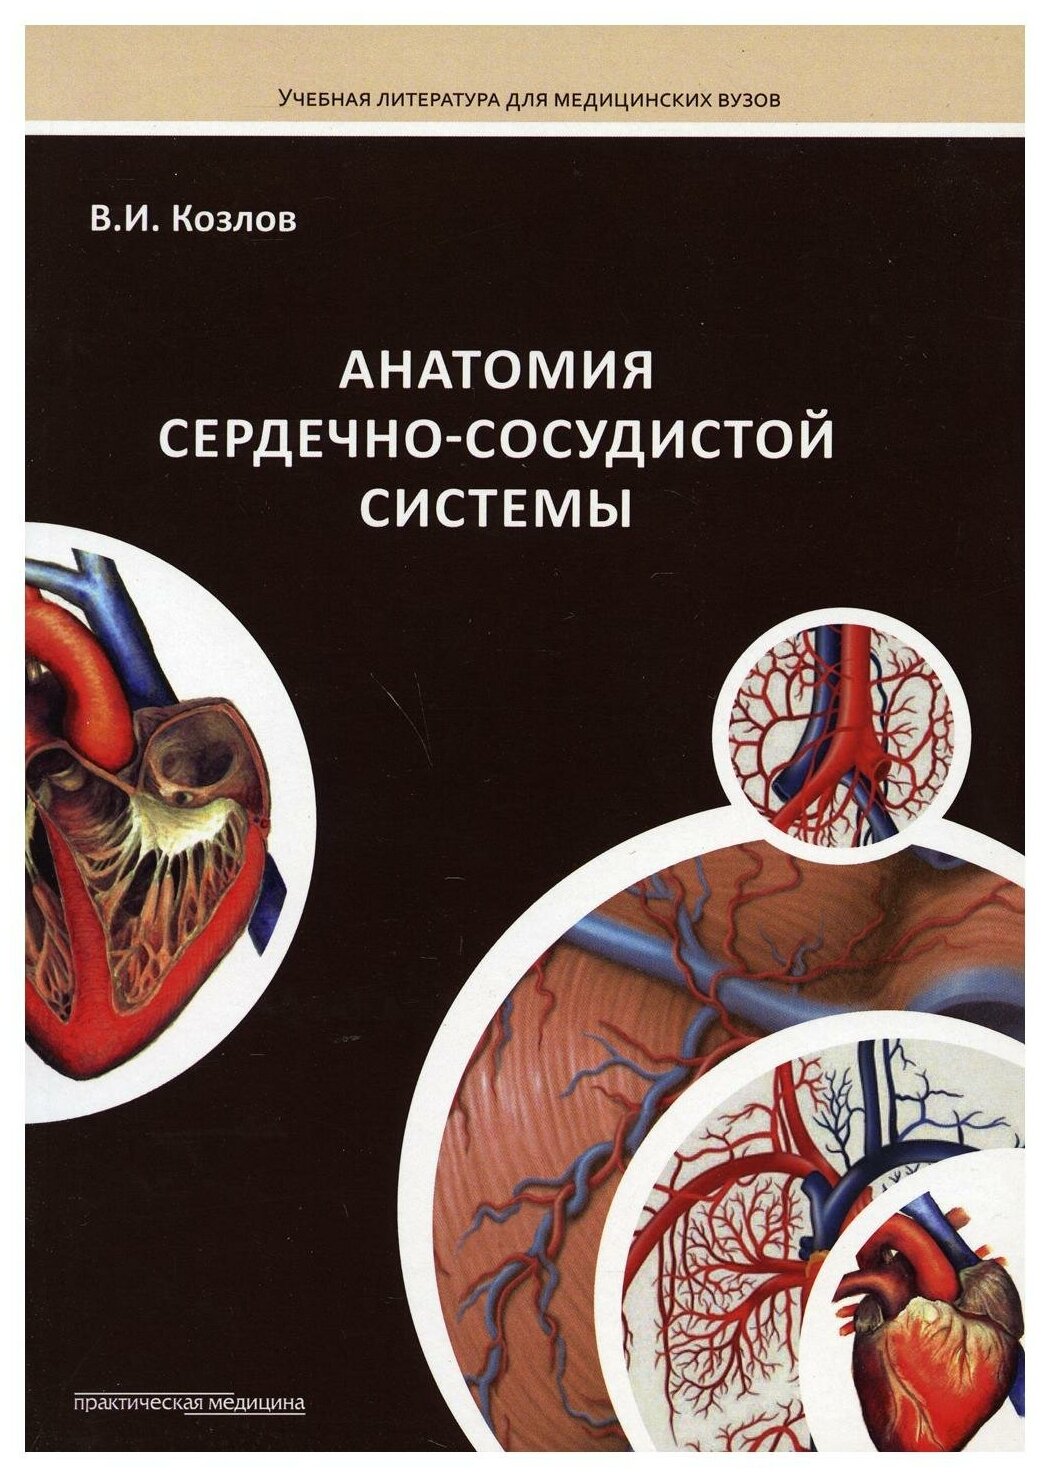 Анатомия сердечно-сосудистой системы. Учебное пособие для студентов медицинских вузов - фото №1